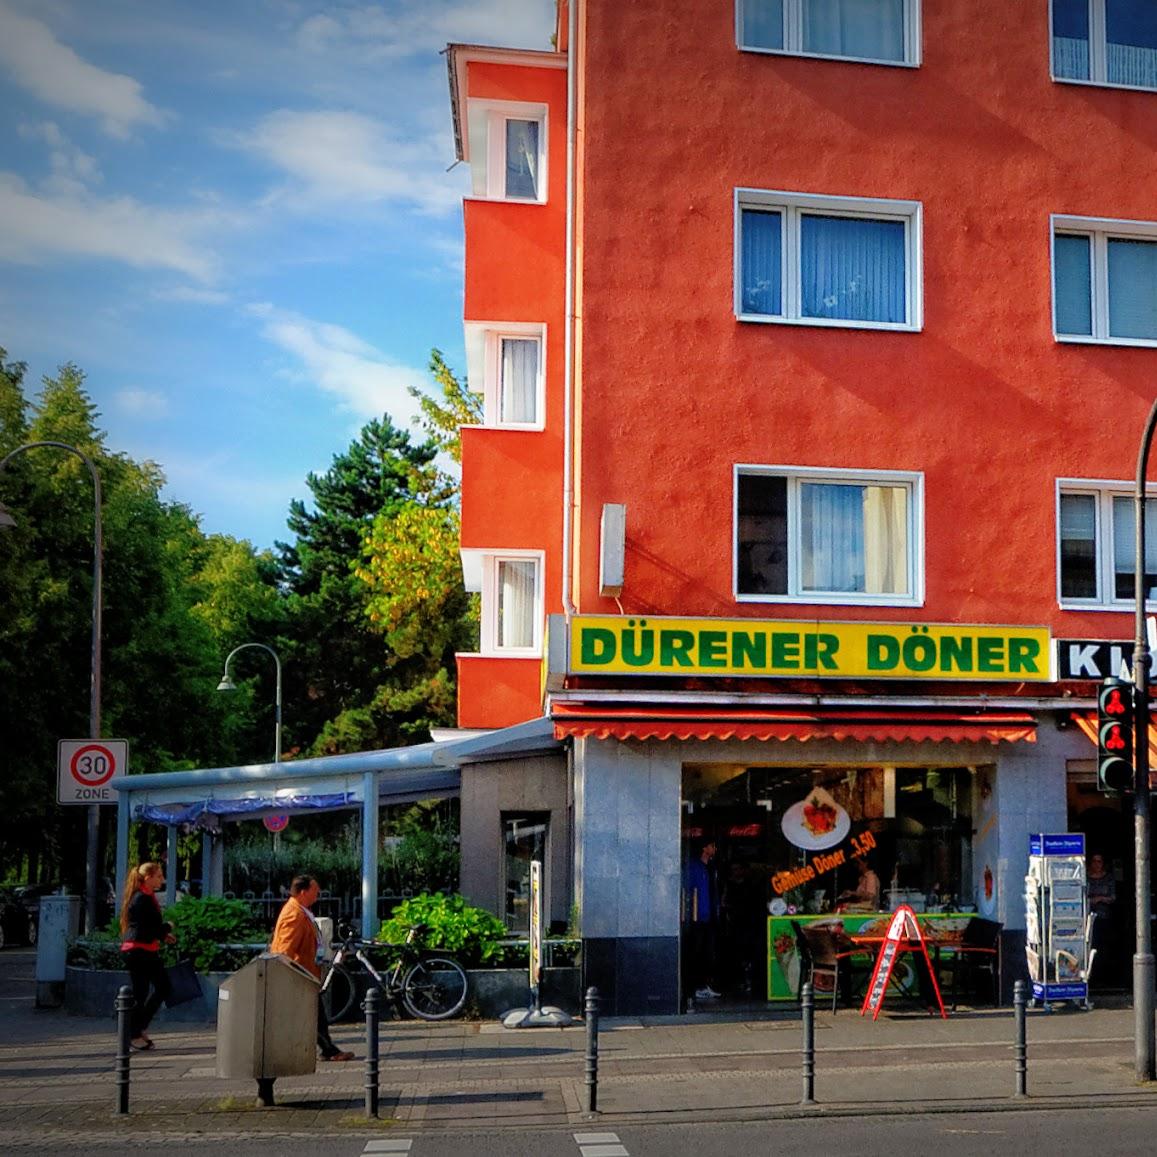 Restaurant "Dürener Döner" in Köln